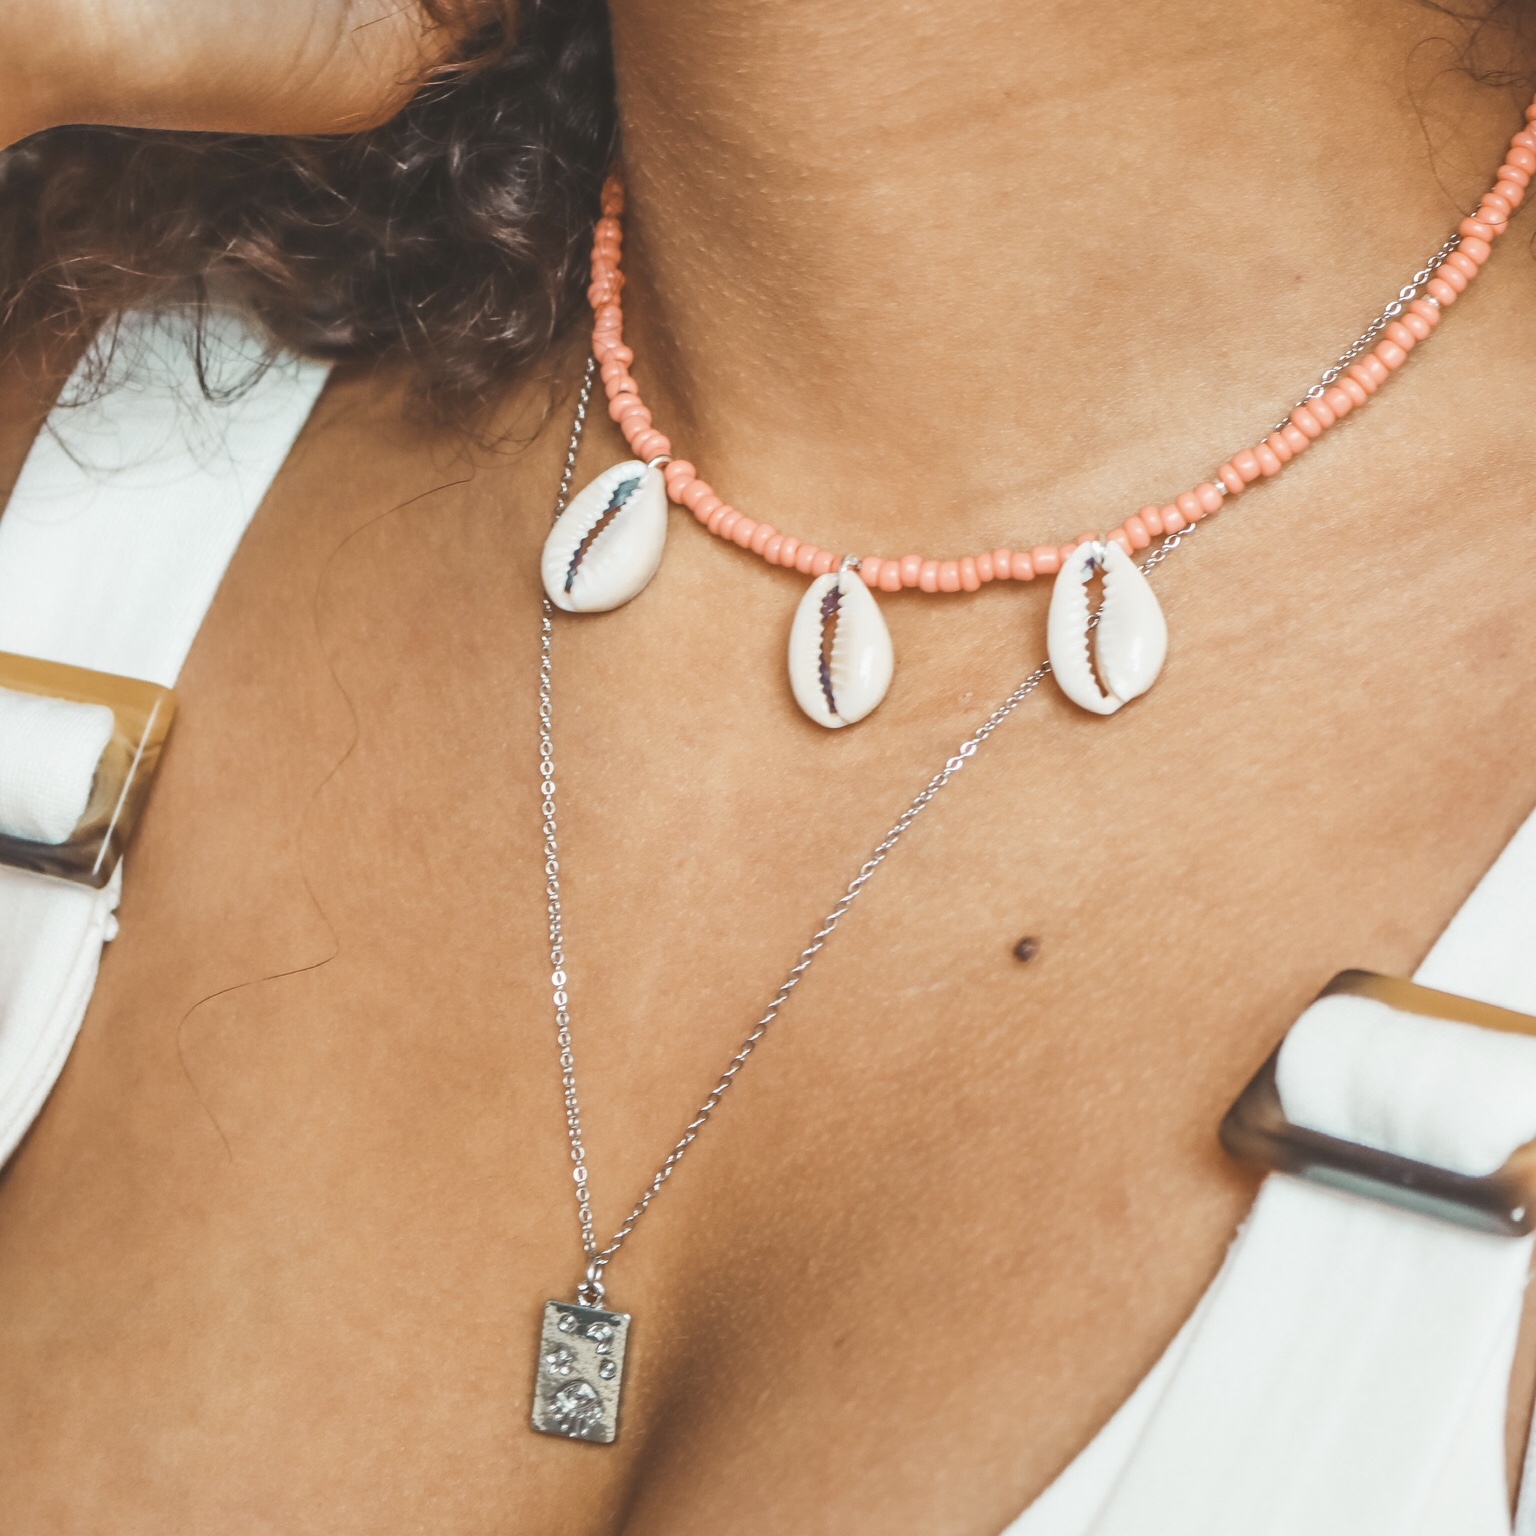 Fine jewelry: sky tag silver